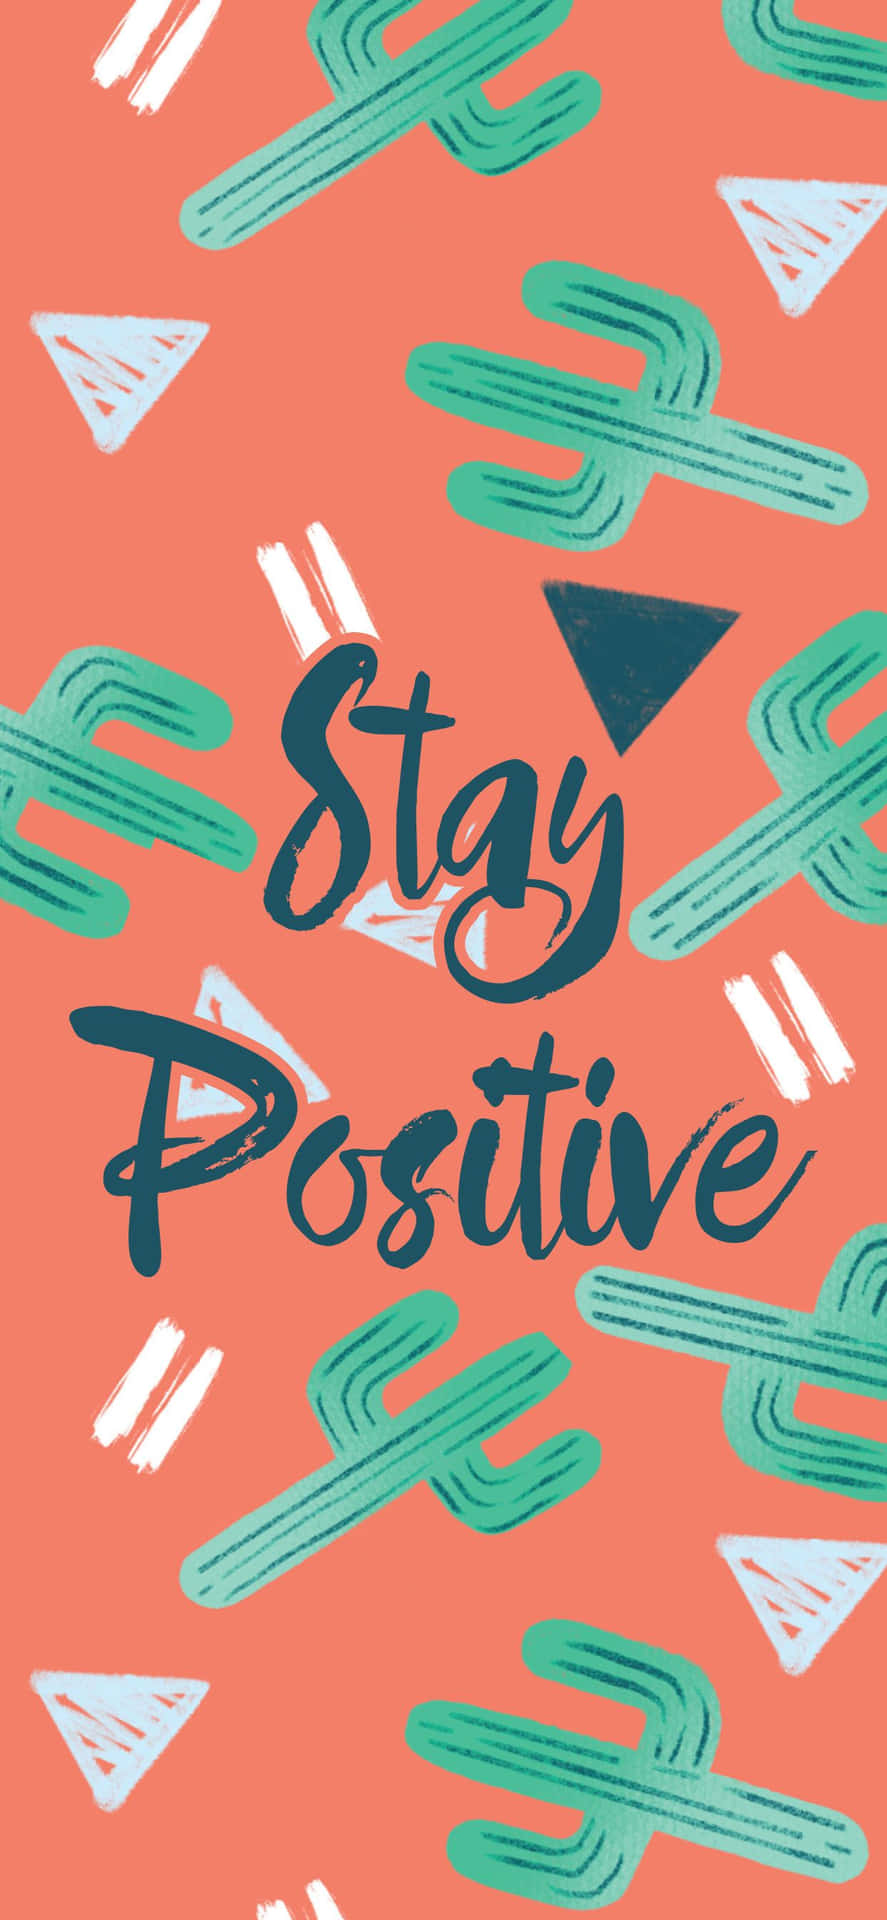 48+] Stay Positive iPhone Wallpaper - WallpaperSafari